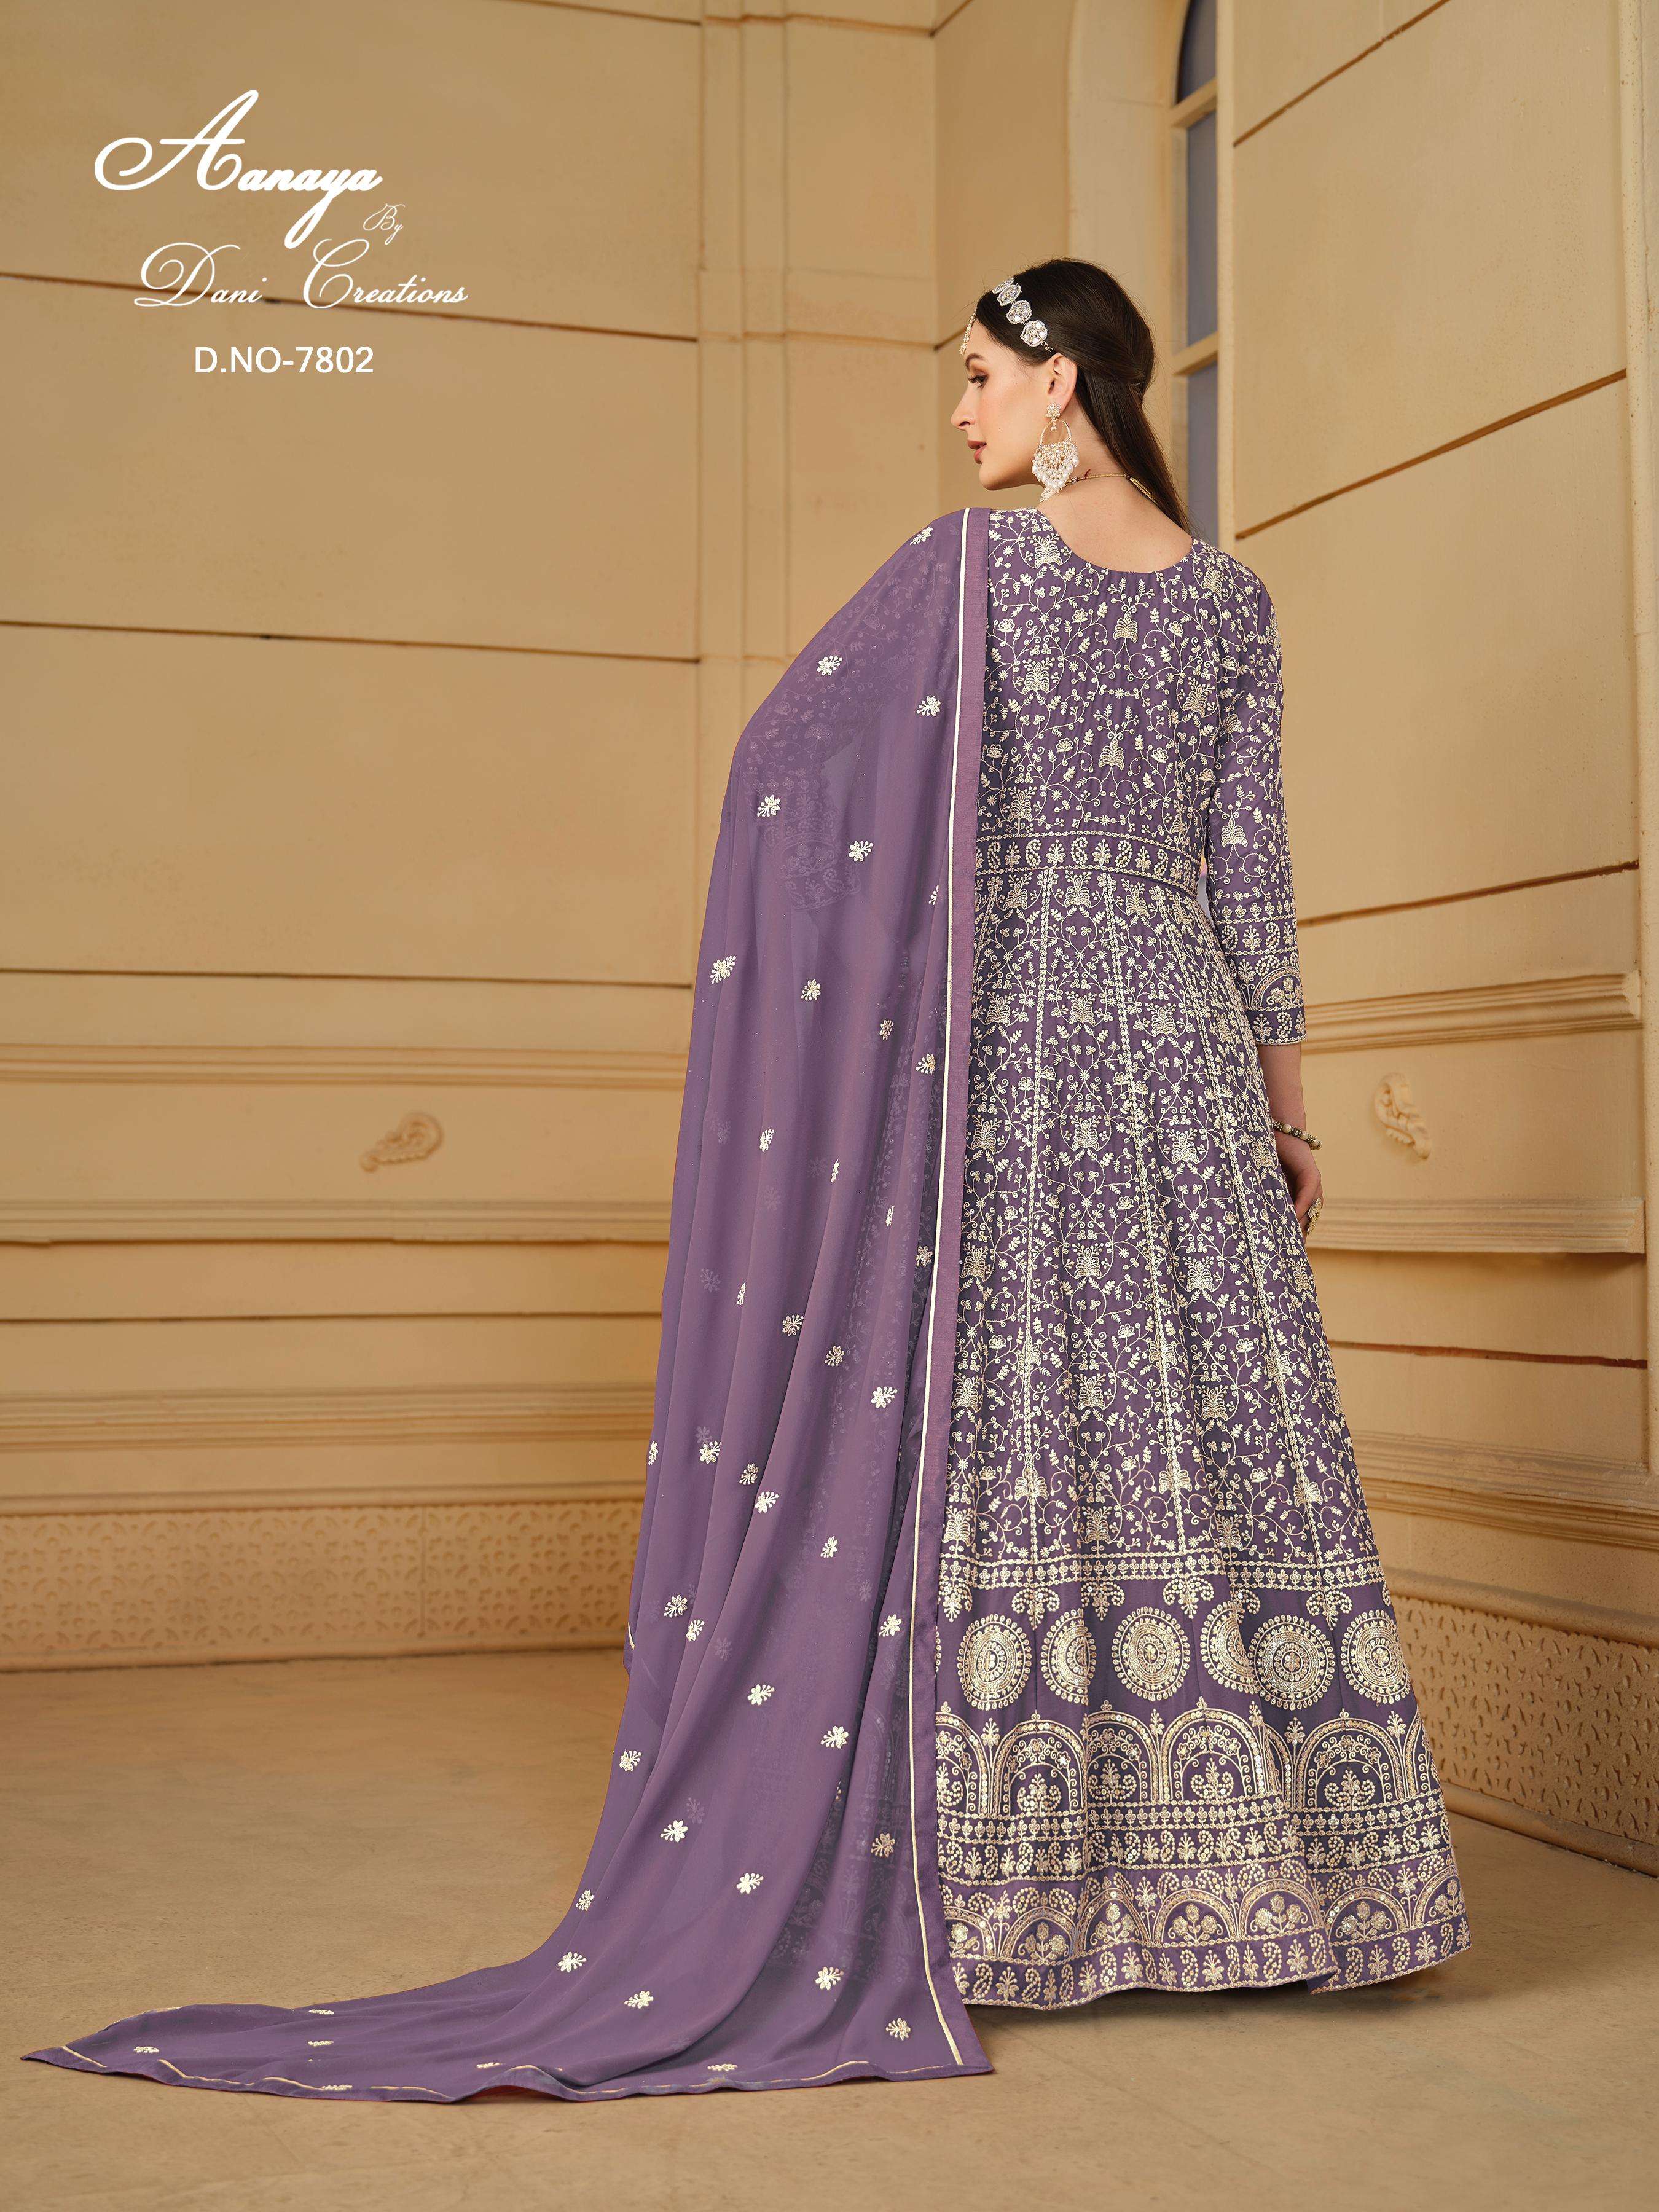 dani aanaya 7800 series vol 178 georgette regal look salwar suit catalog